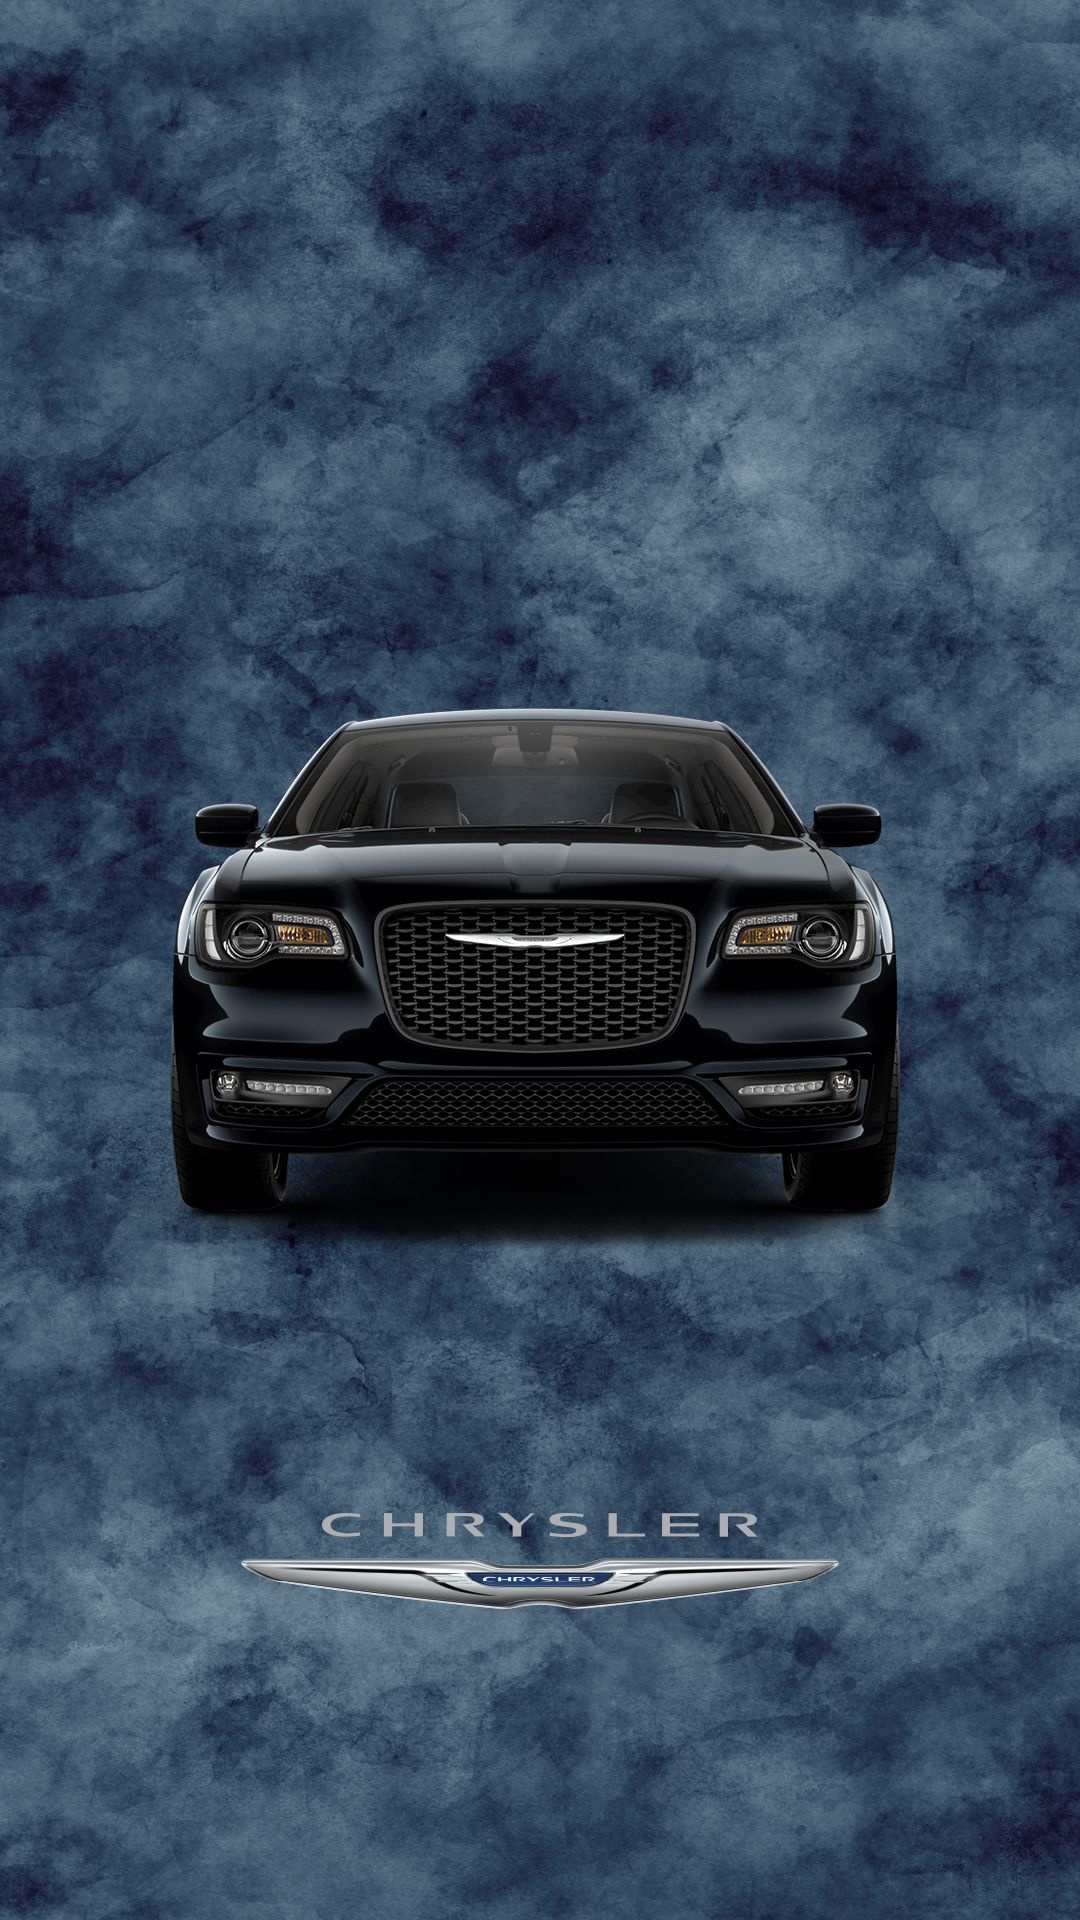 Chrysler 300, Iconic luxury sedan, SRT power, Chrysler logo, 1080x1920 Full HD Phone